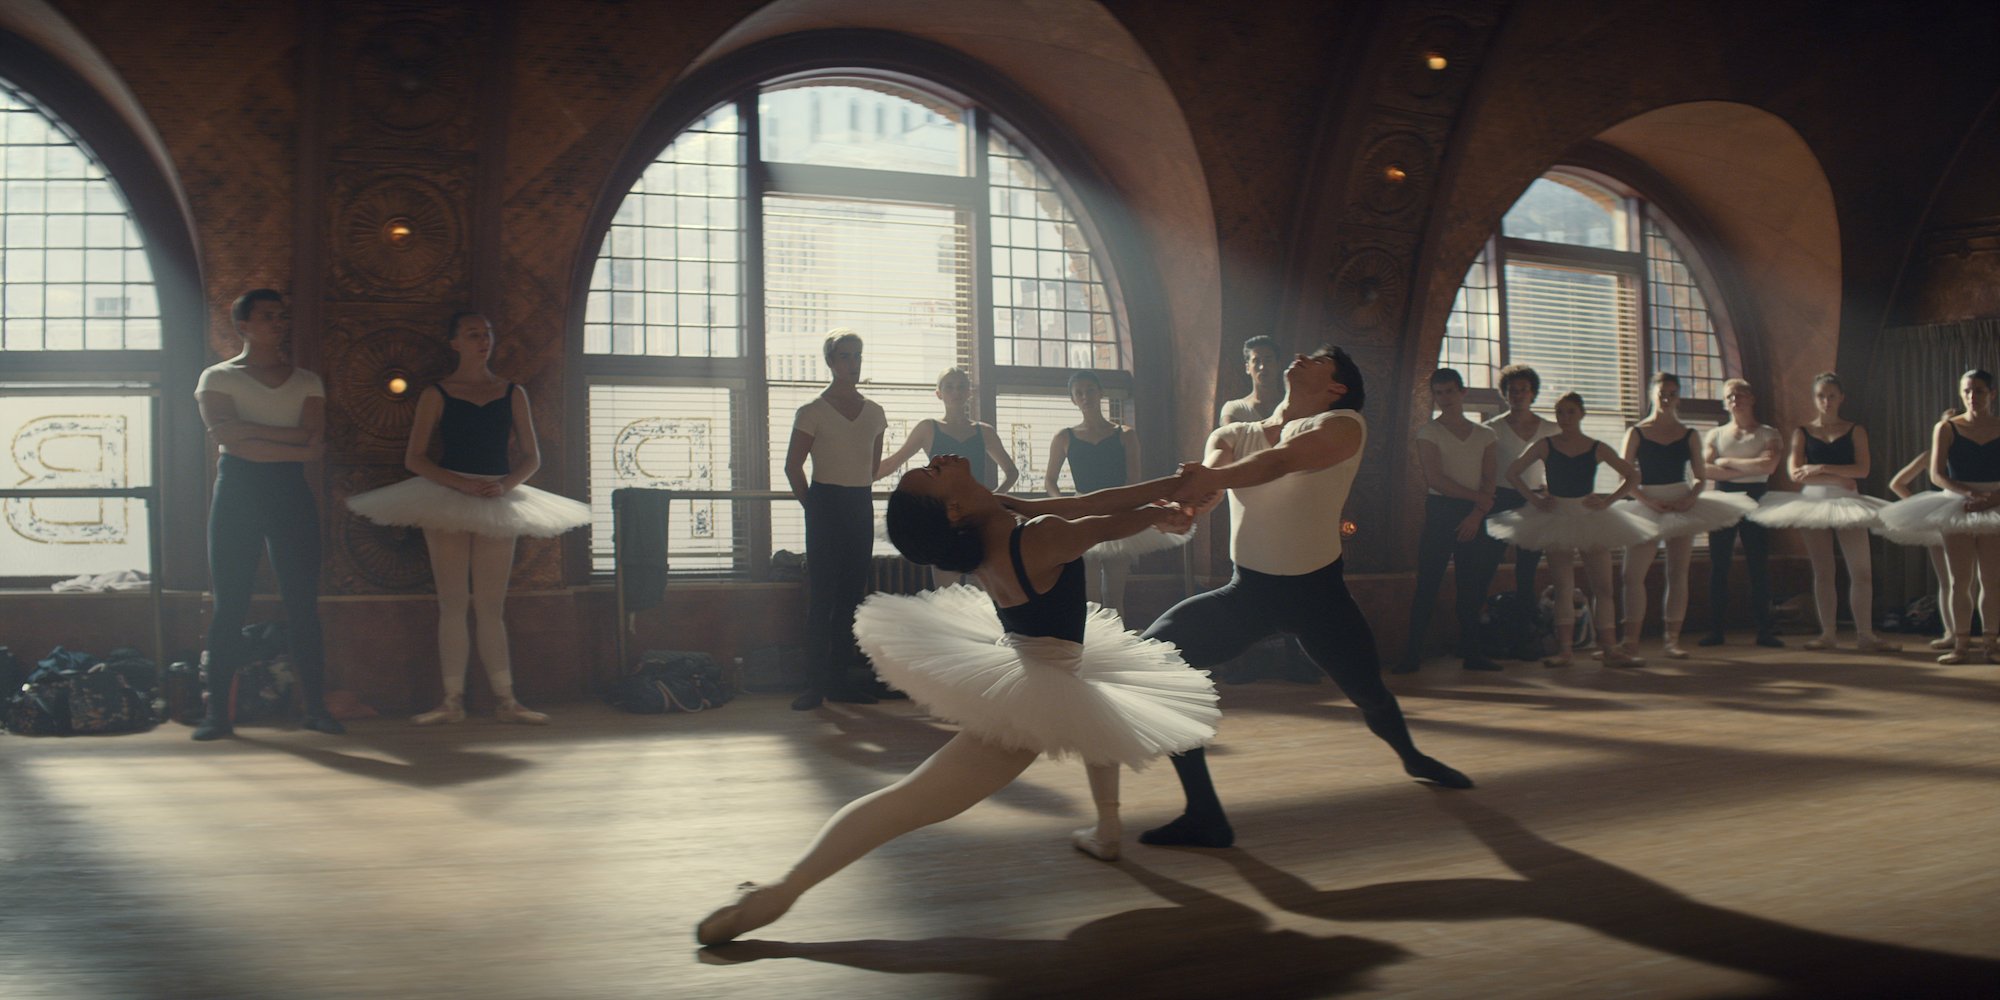 (L-R) A ballet dancer in a tutu dancing with a male dancer in a studio